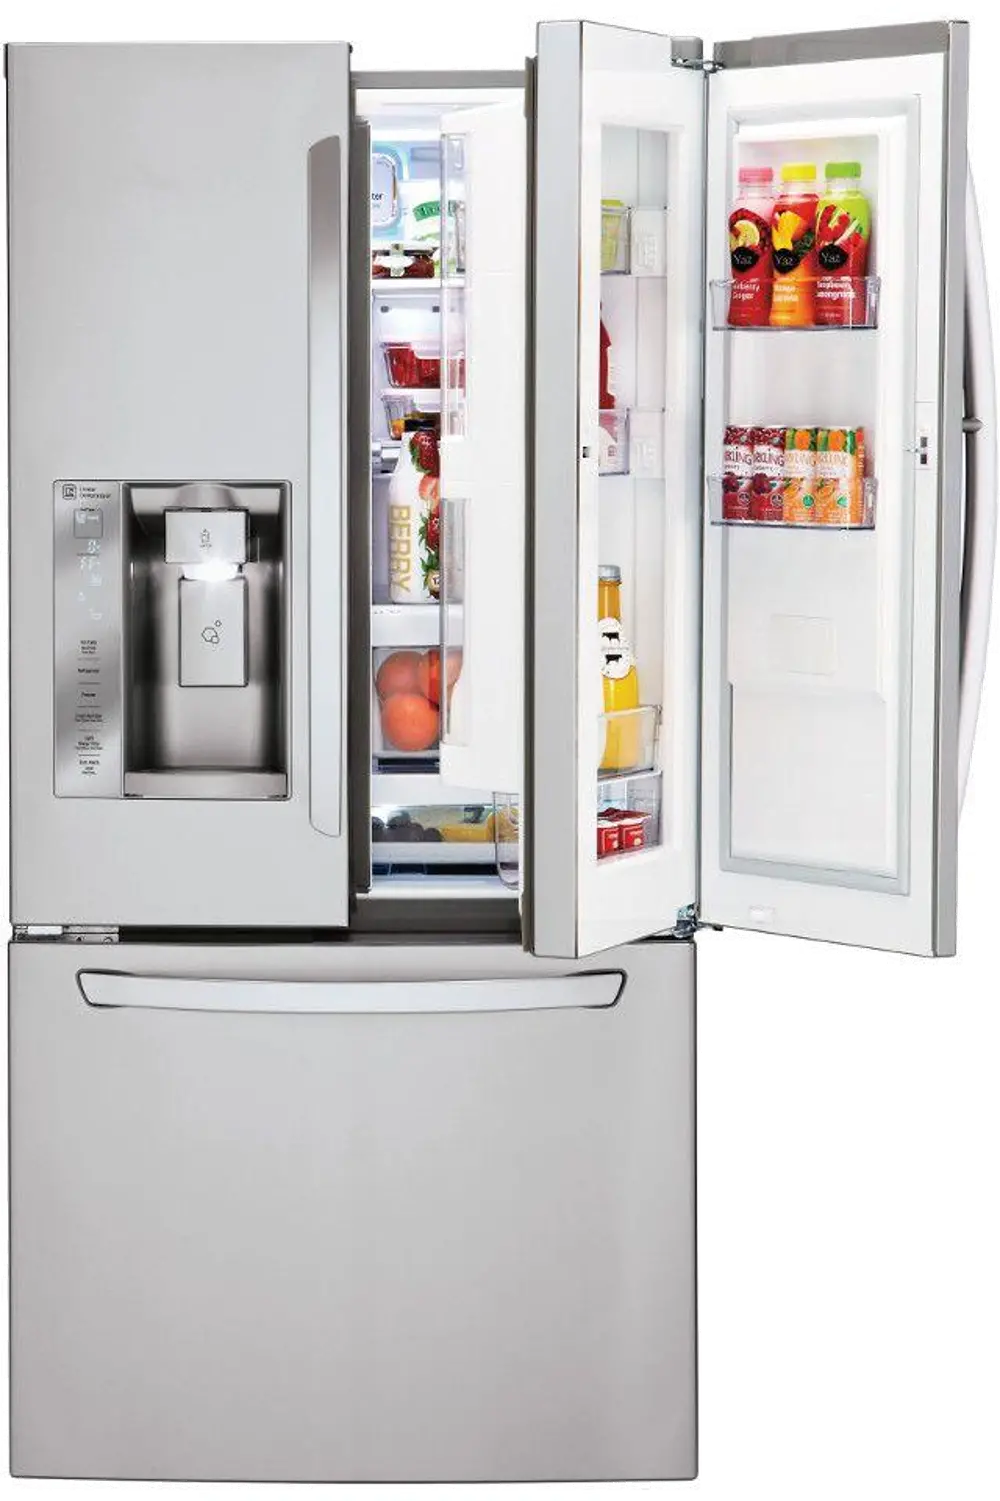 LFXS24663S LG Door-in-Door French Door Refrigerator with Smart Cooling System - 33 Inch Stainless Steel-1